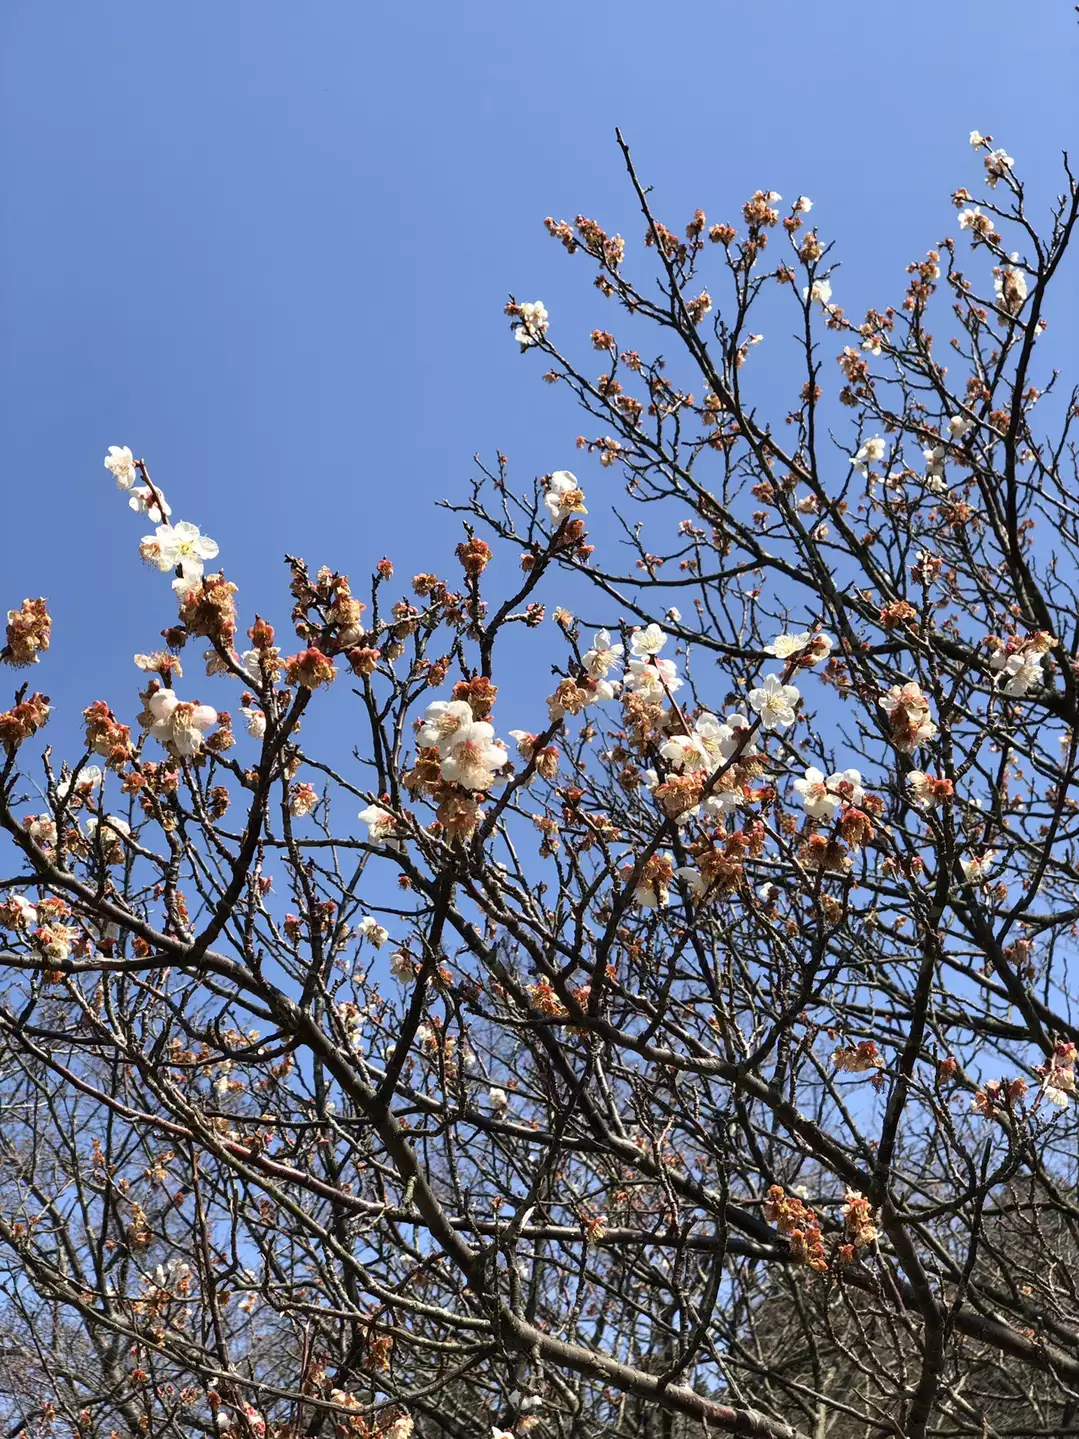 桜 の開花チェックに二上山へ 19 03 26 どんがばちょさんの金剛山 二上山 大和葛城山の活動データ Yamap ヤマップ